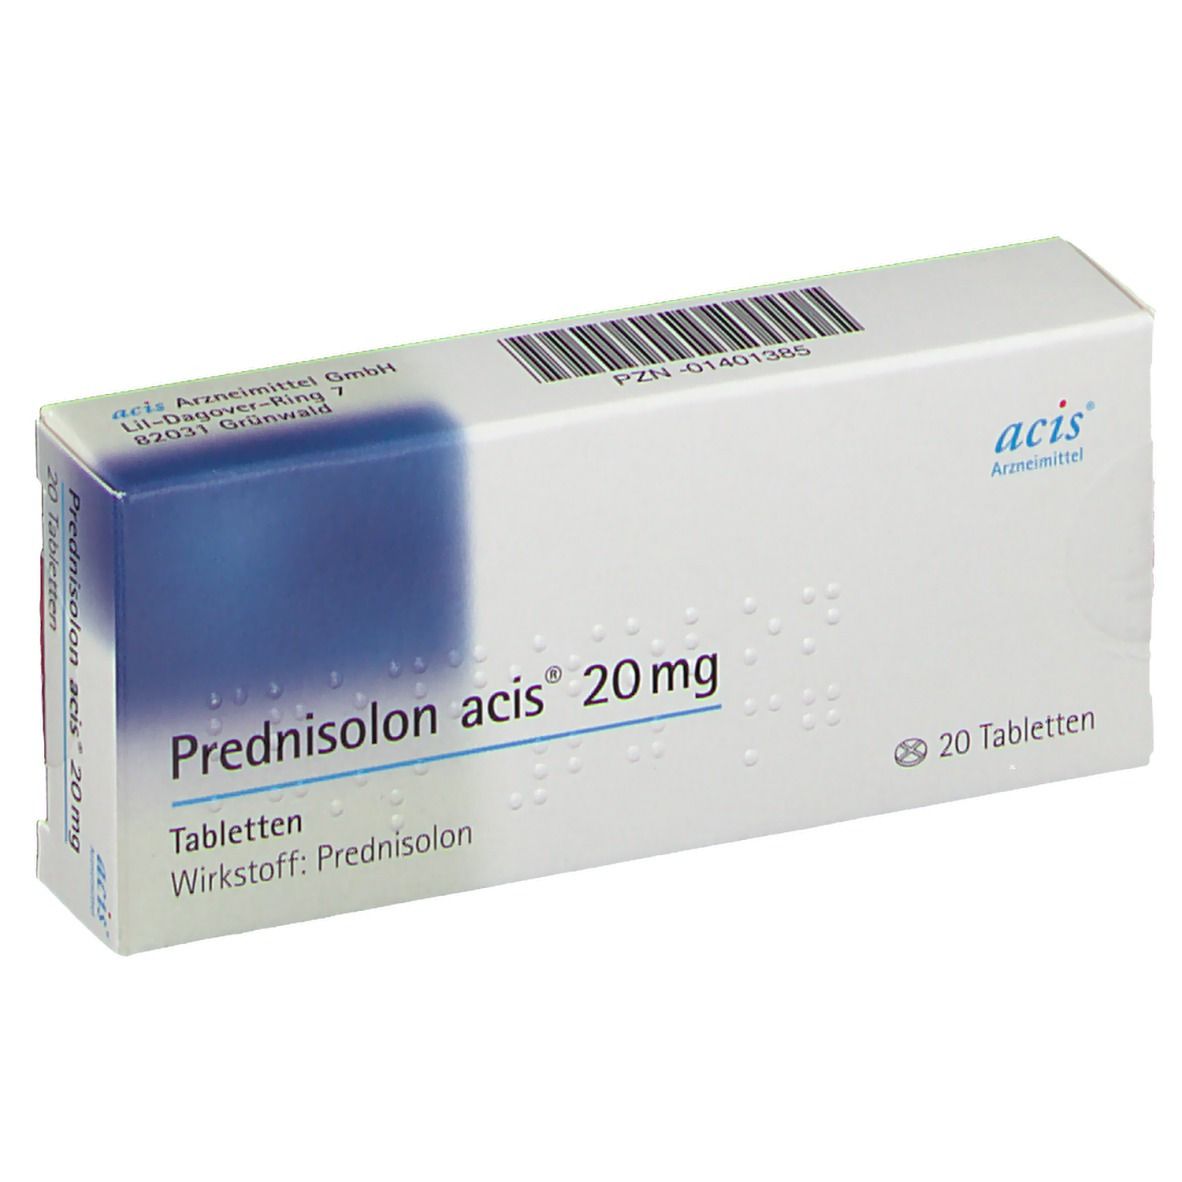 Prednisolon acis® 20Mg